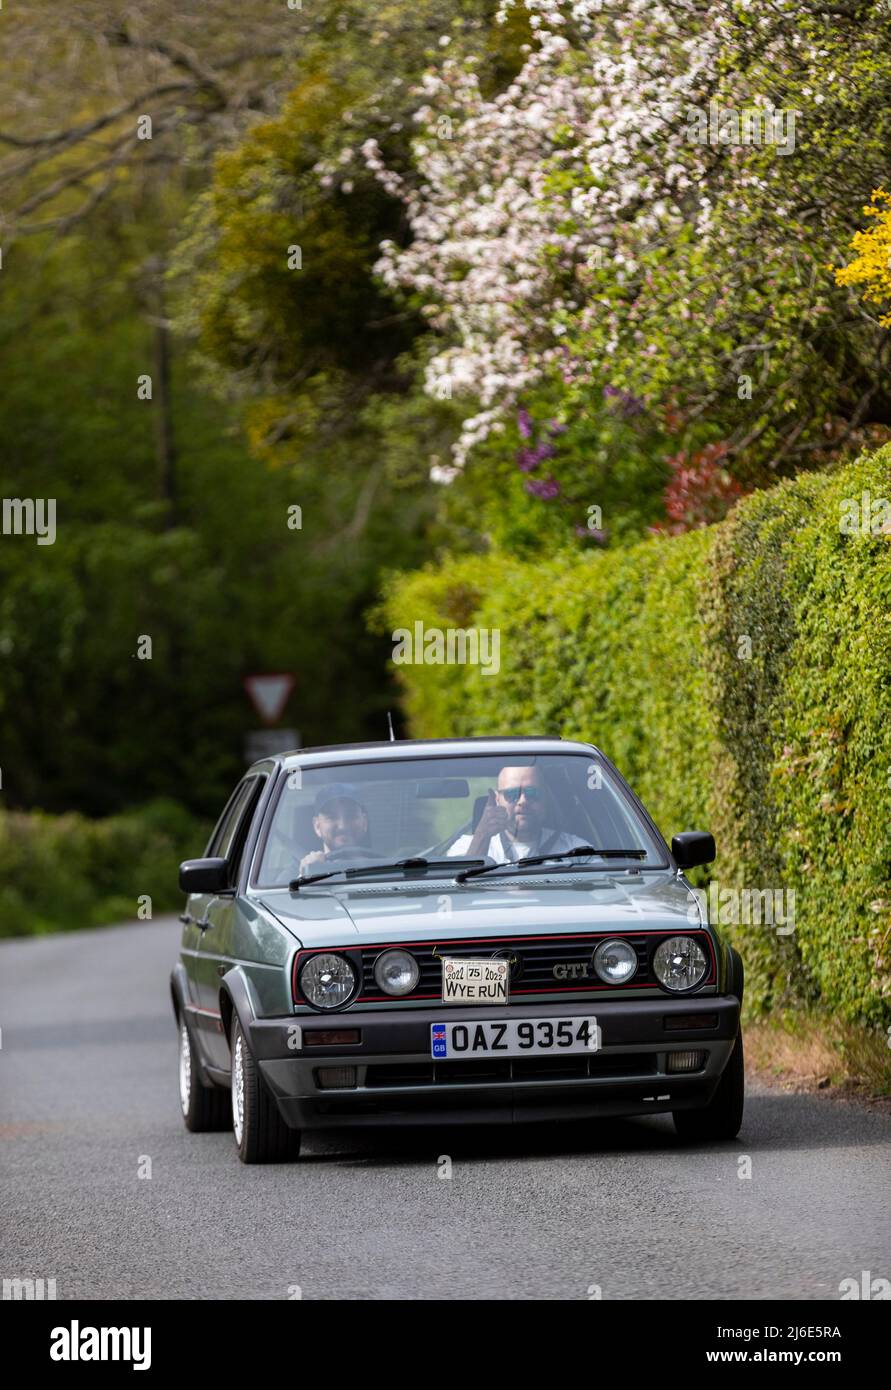 VW Golf GTI participe à l'association caritative « Wye Run » du club Rotary de printemps de voitures classiques, à travers le pays de Galles et la vallée de Wye. Banque D'Images